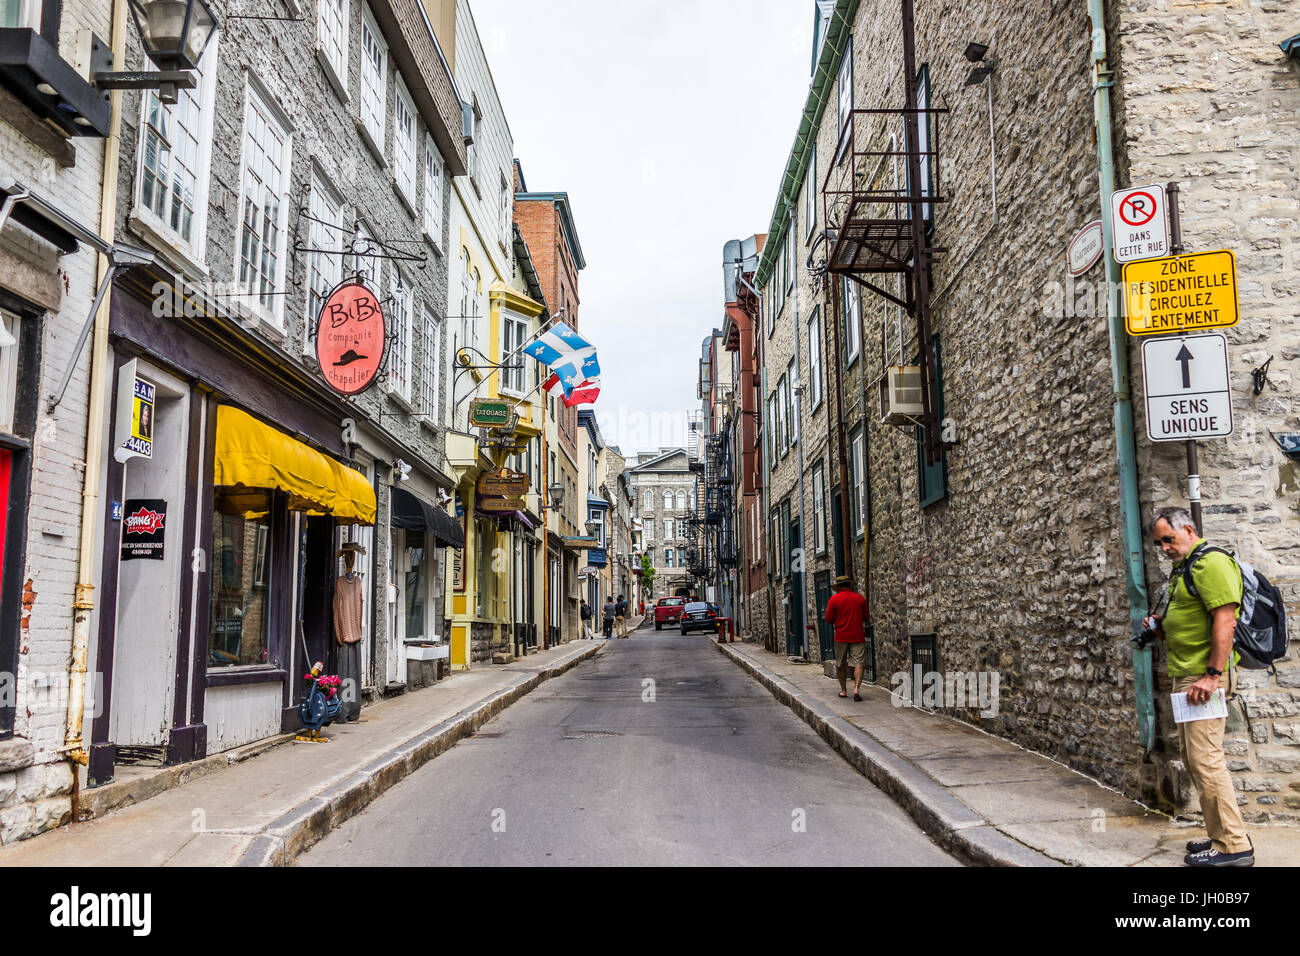 La ville de Québec, Canada - 29 mai 2017 : vieille ville alley street avec ses boutiques et magasins avec mur de pierre bâtiments Banque D'Images